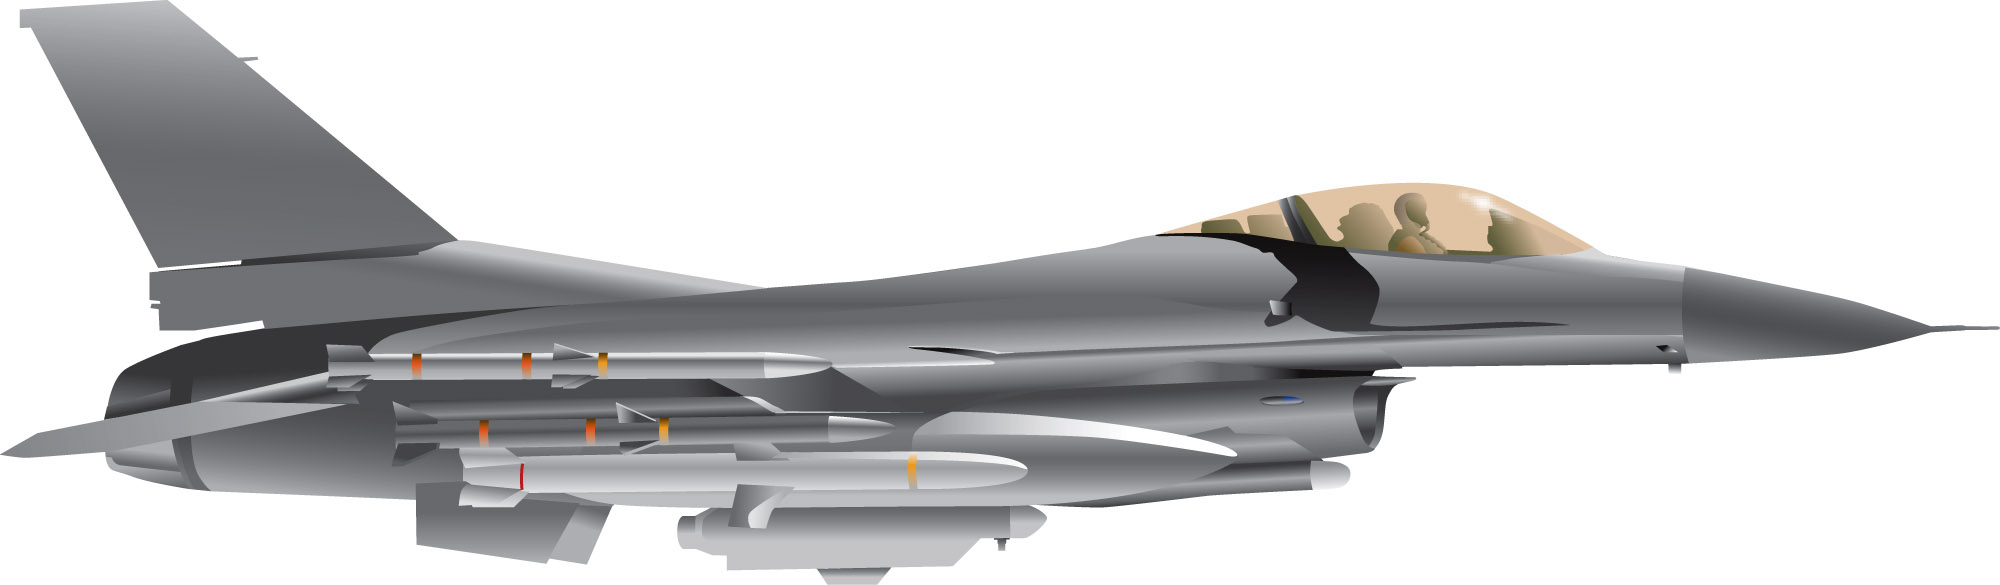 F-16 Fighting Falcon.